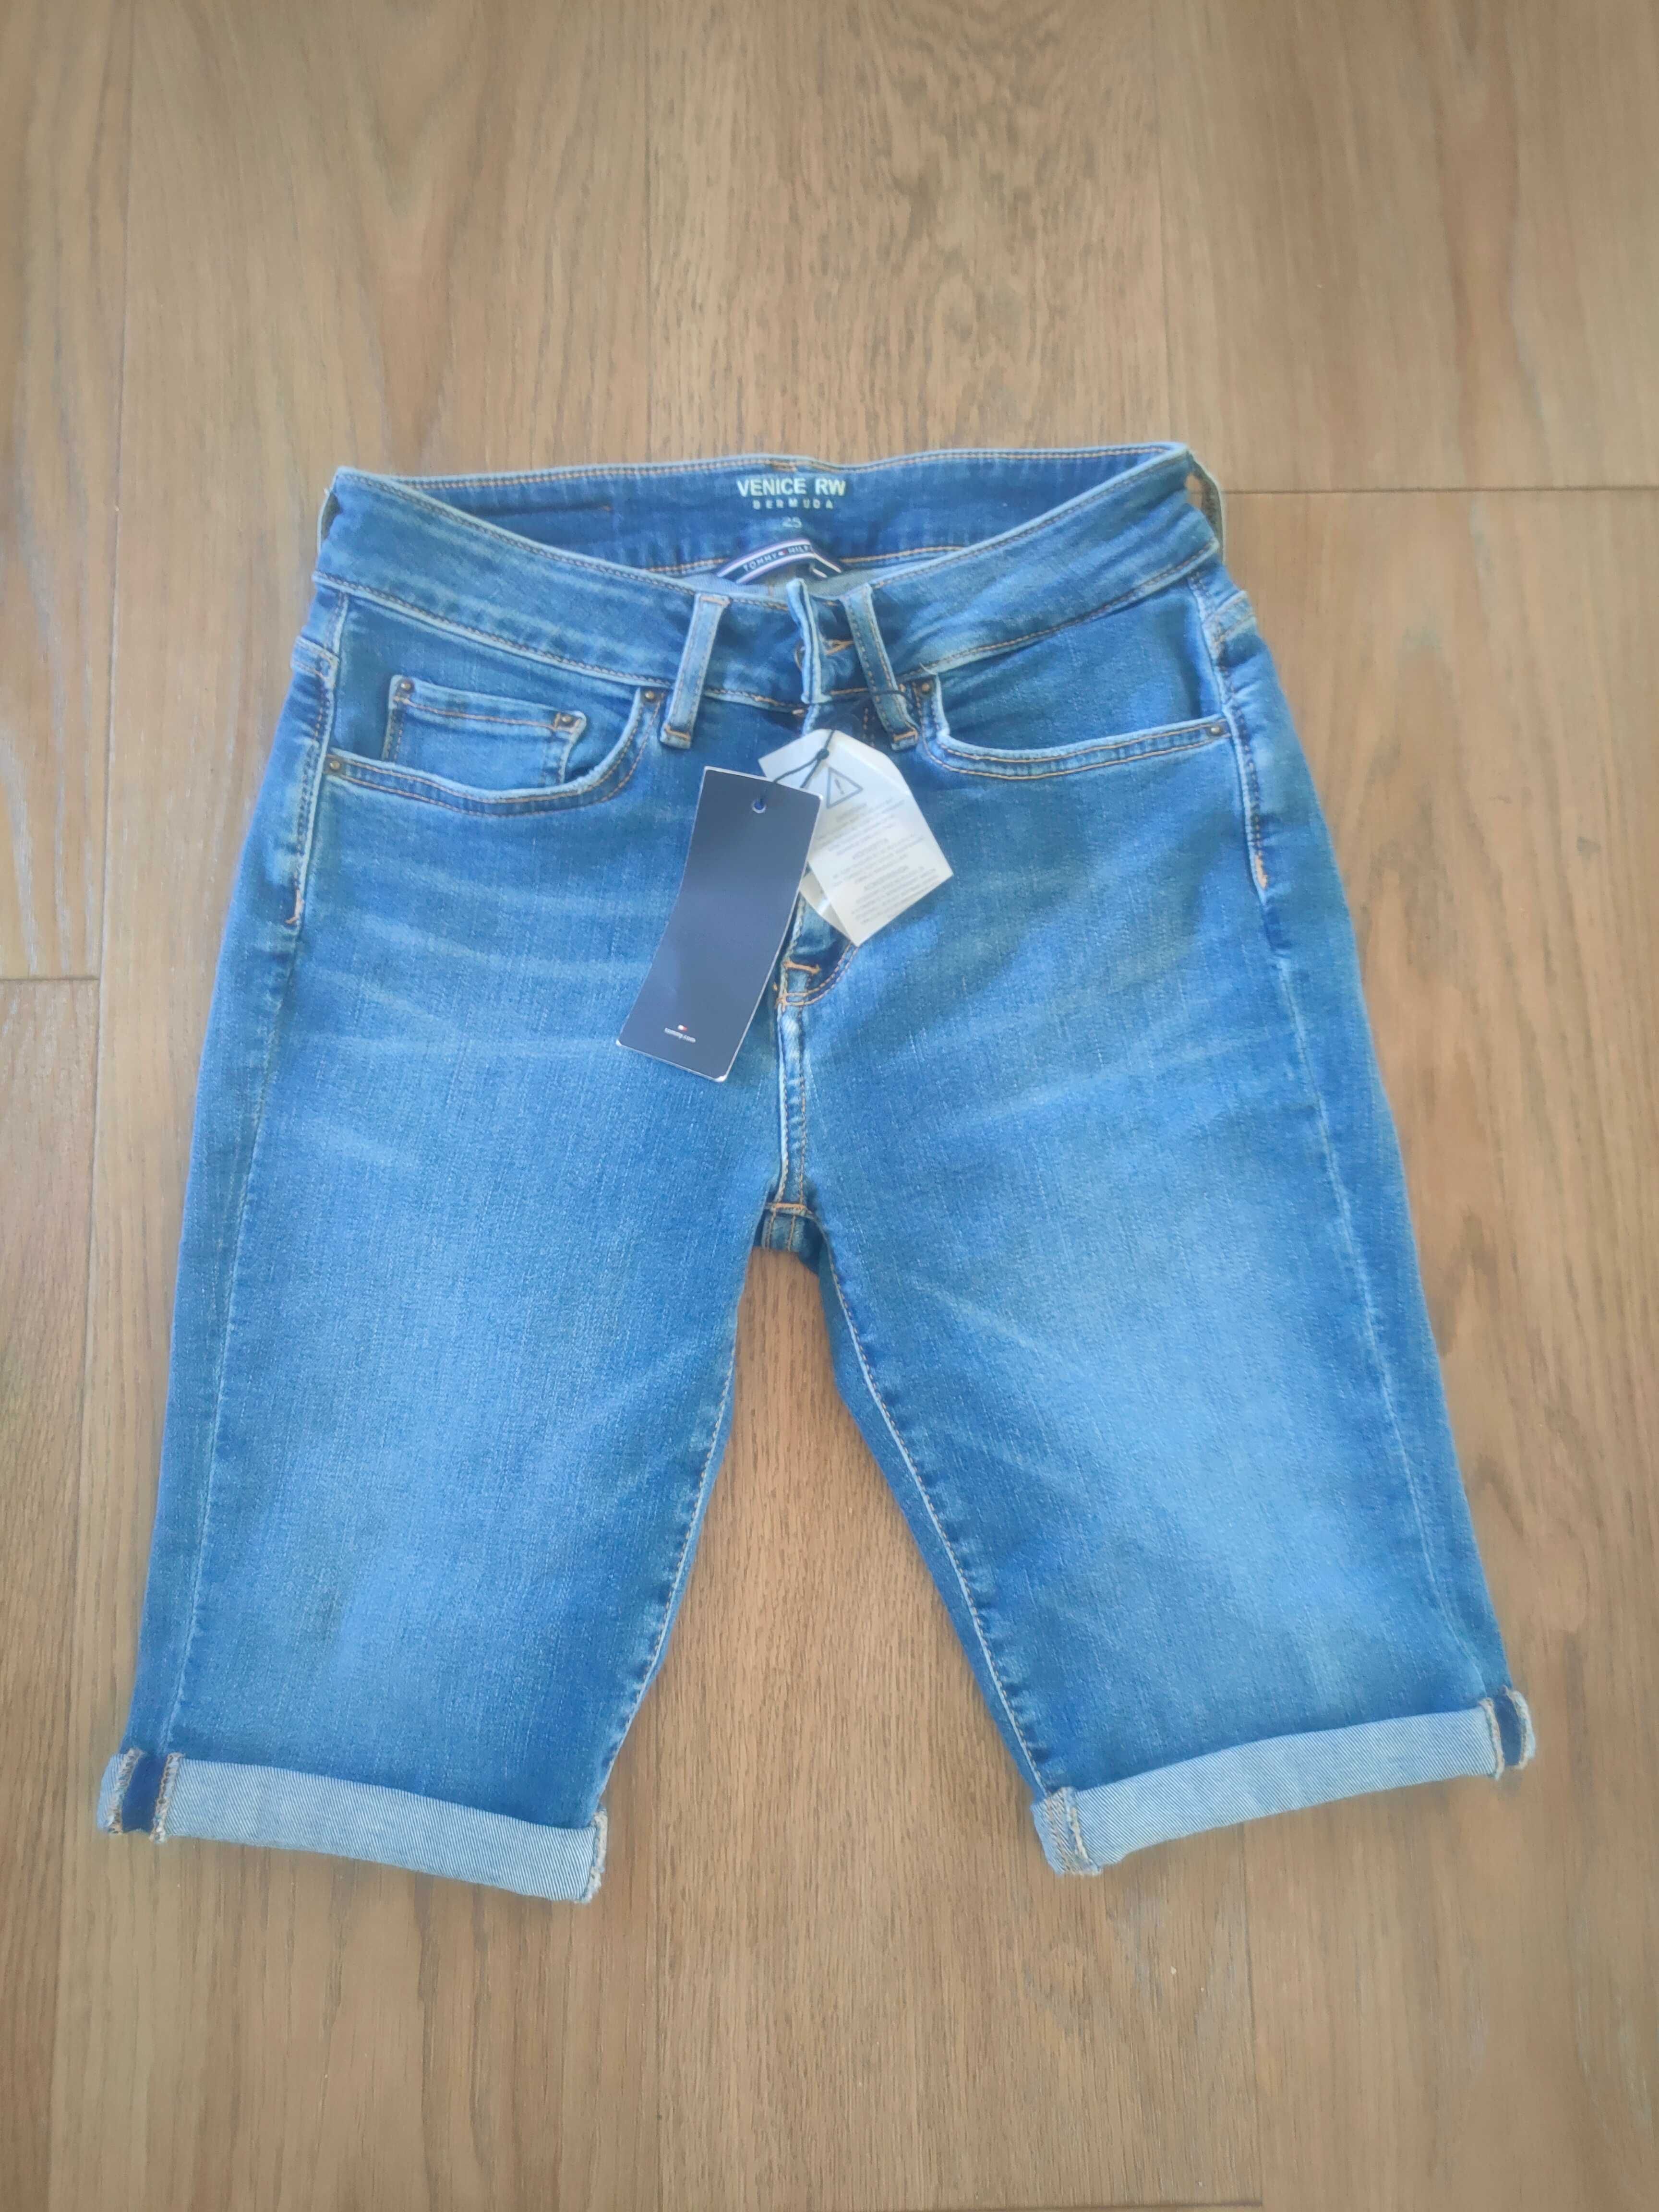 Spodnie jeans krótkie,bermudy Tommy Hilfiger nowe